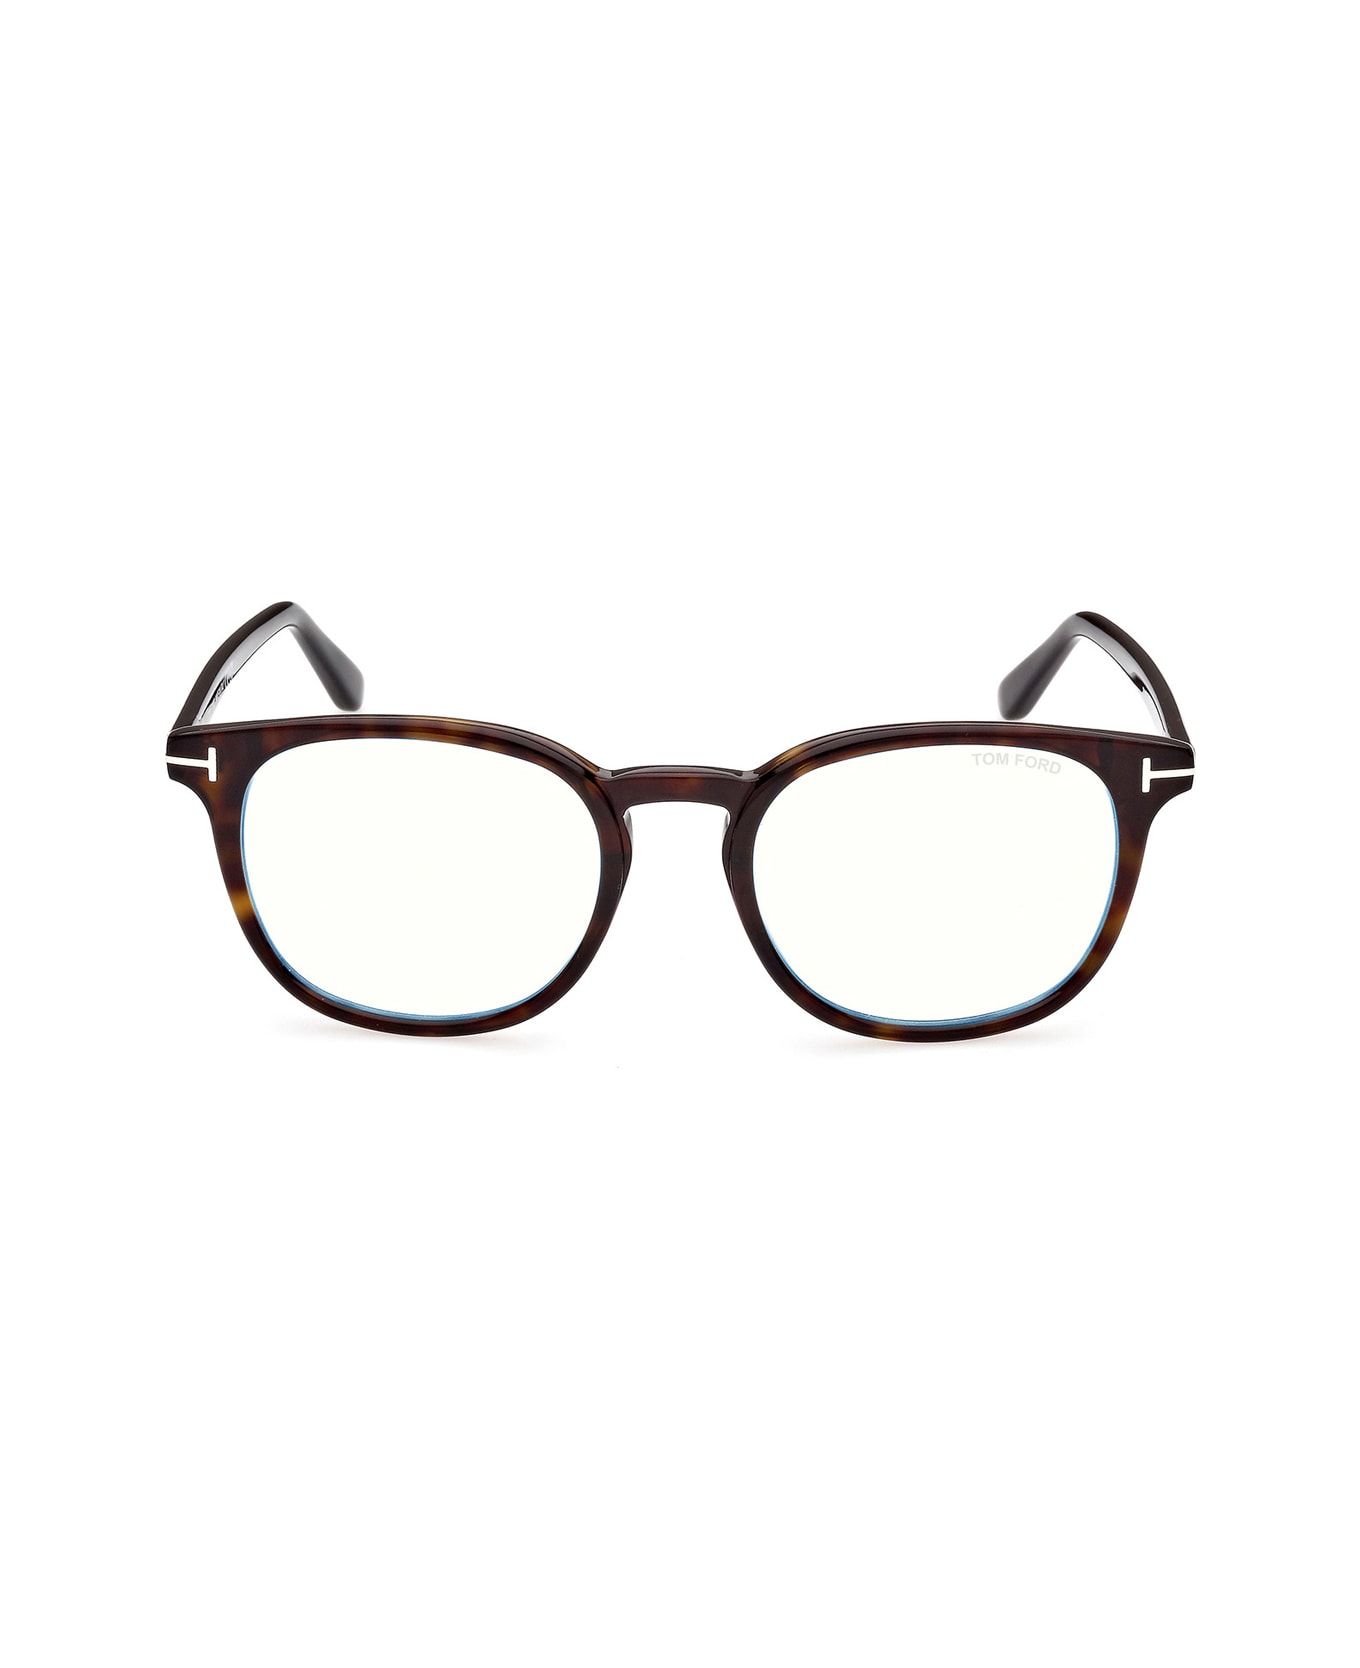 Tom Ford Eyewear Ft5819 Glasses - Marrone